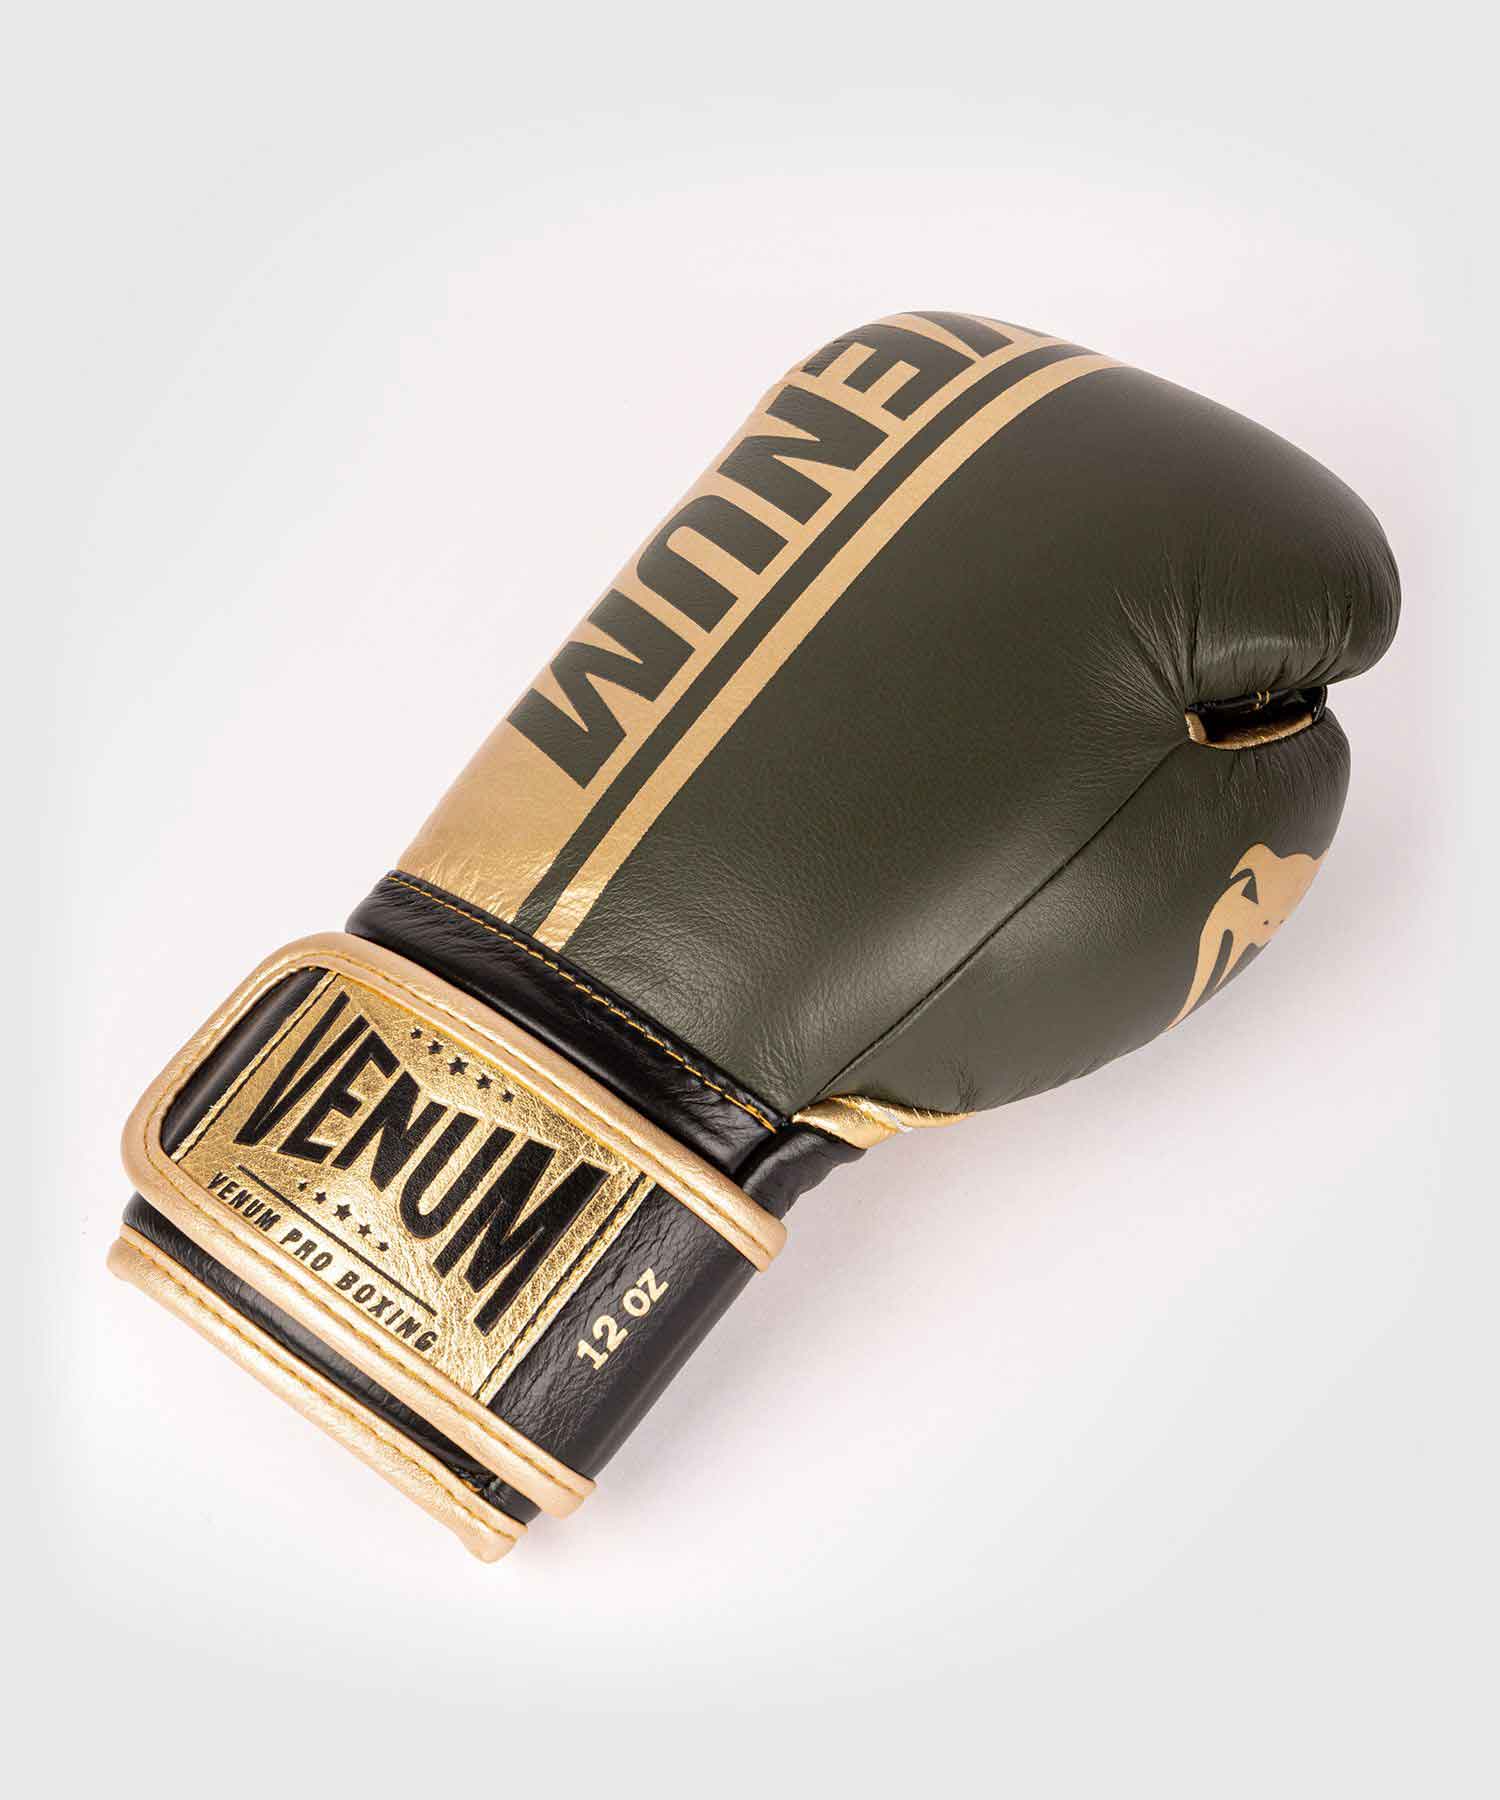 VENUM／ヴェナム　ボクシンググローブ　　SHIELD PRO BOXING GLOVES VELCRO／シールド プロボクシンググローブ ベルクロ（カーキ／ゴールド）